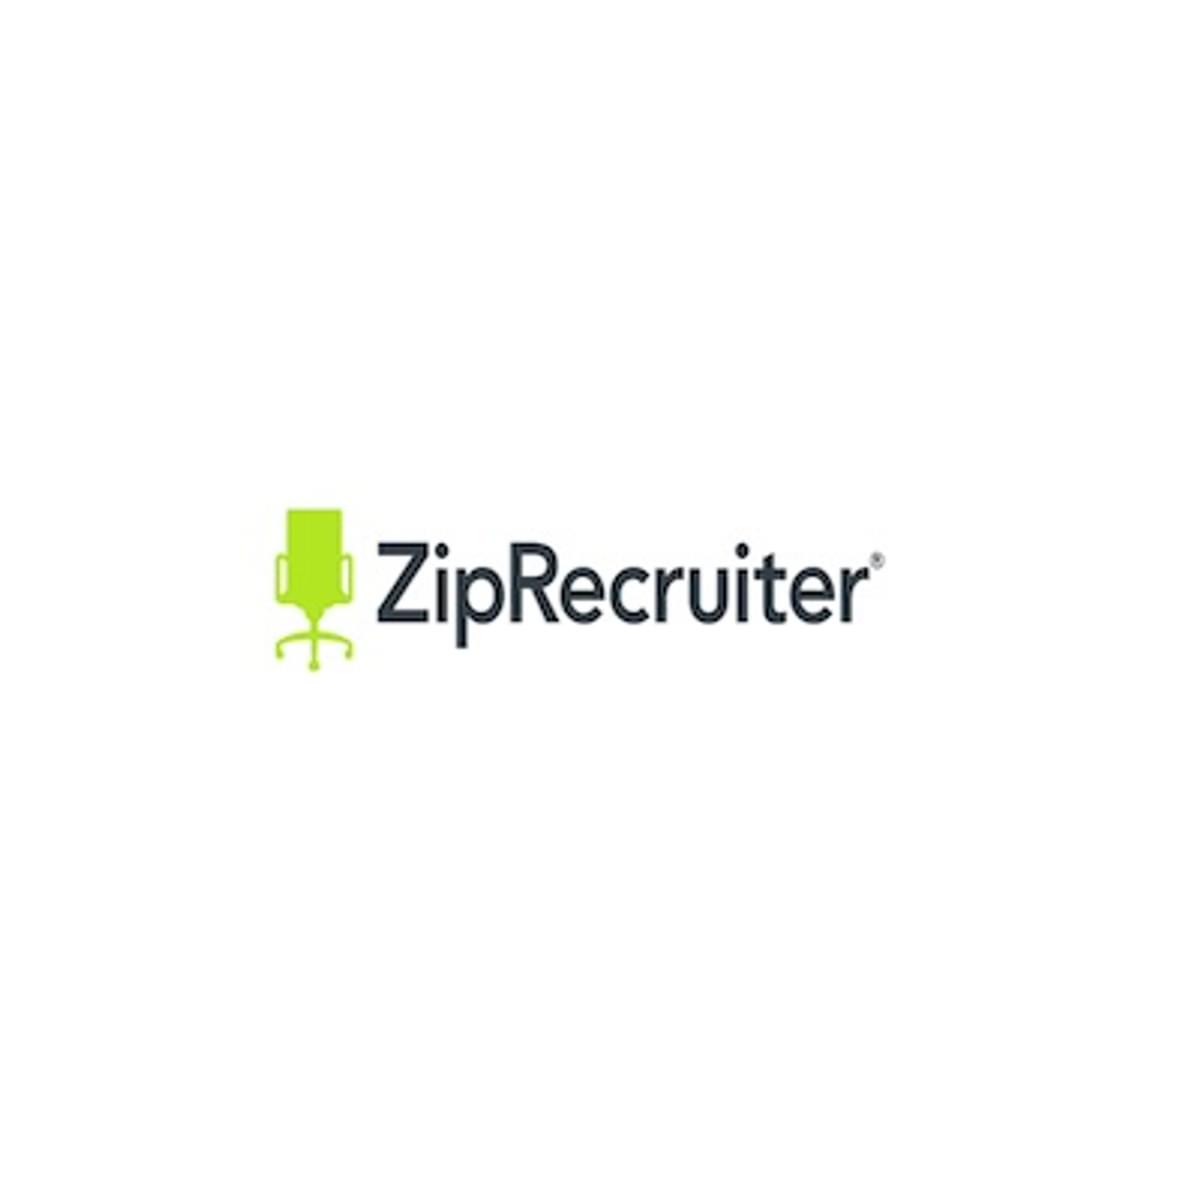 LinkedIn concurrent ZipRecruiter haalt 156 miljoen dollar op image